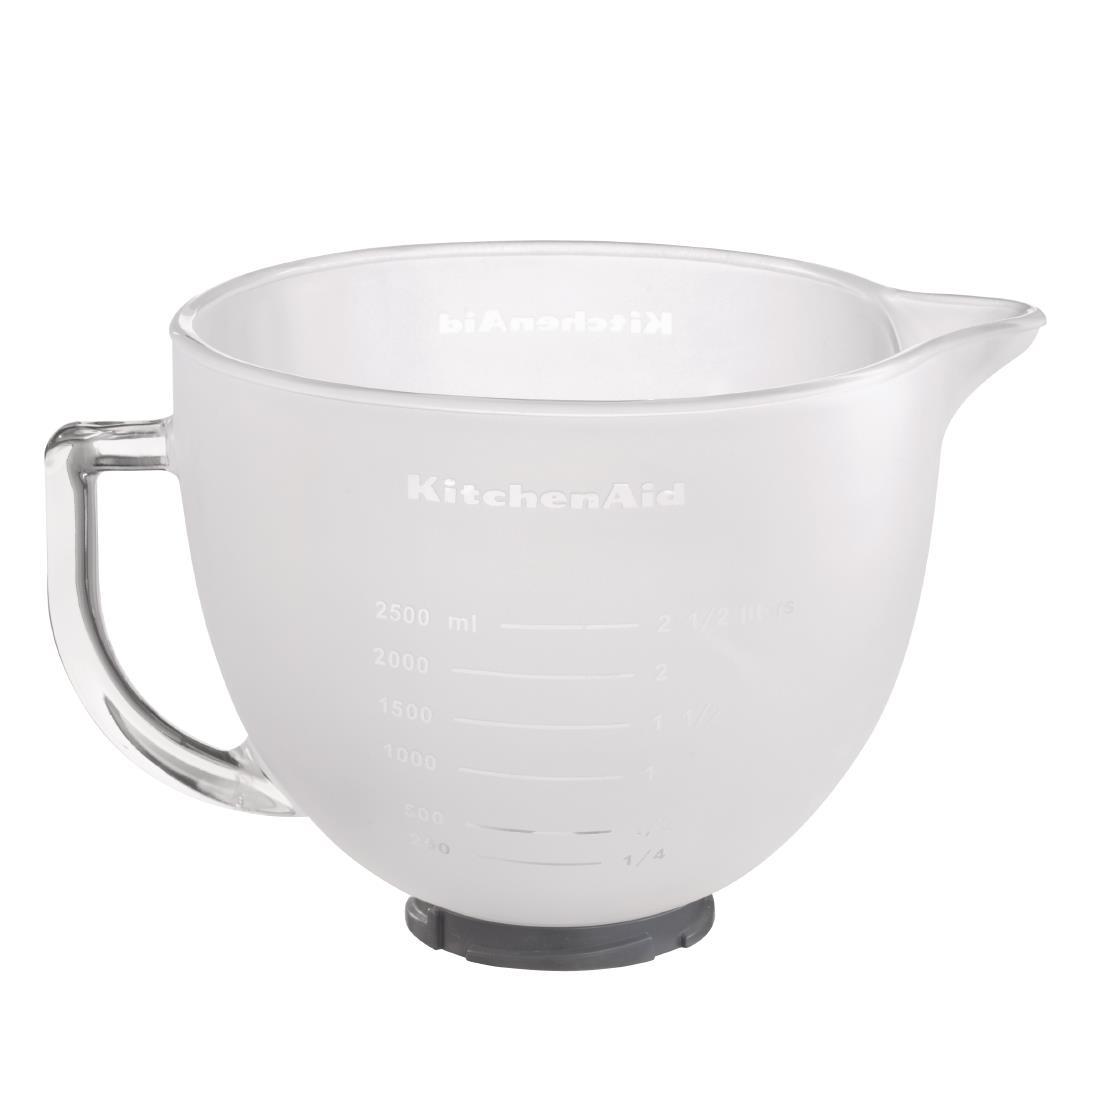 AF994 - KitchenAid 4.8Ltr Frosted Glass Bowl ref 5K5GBF